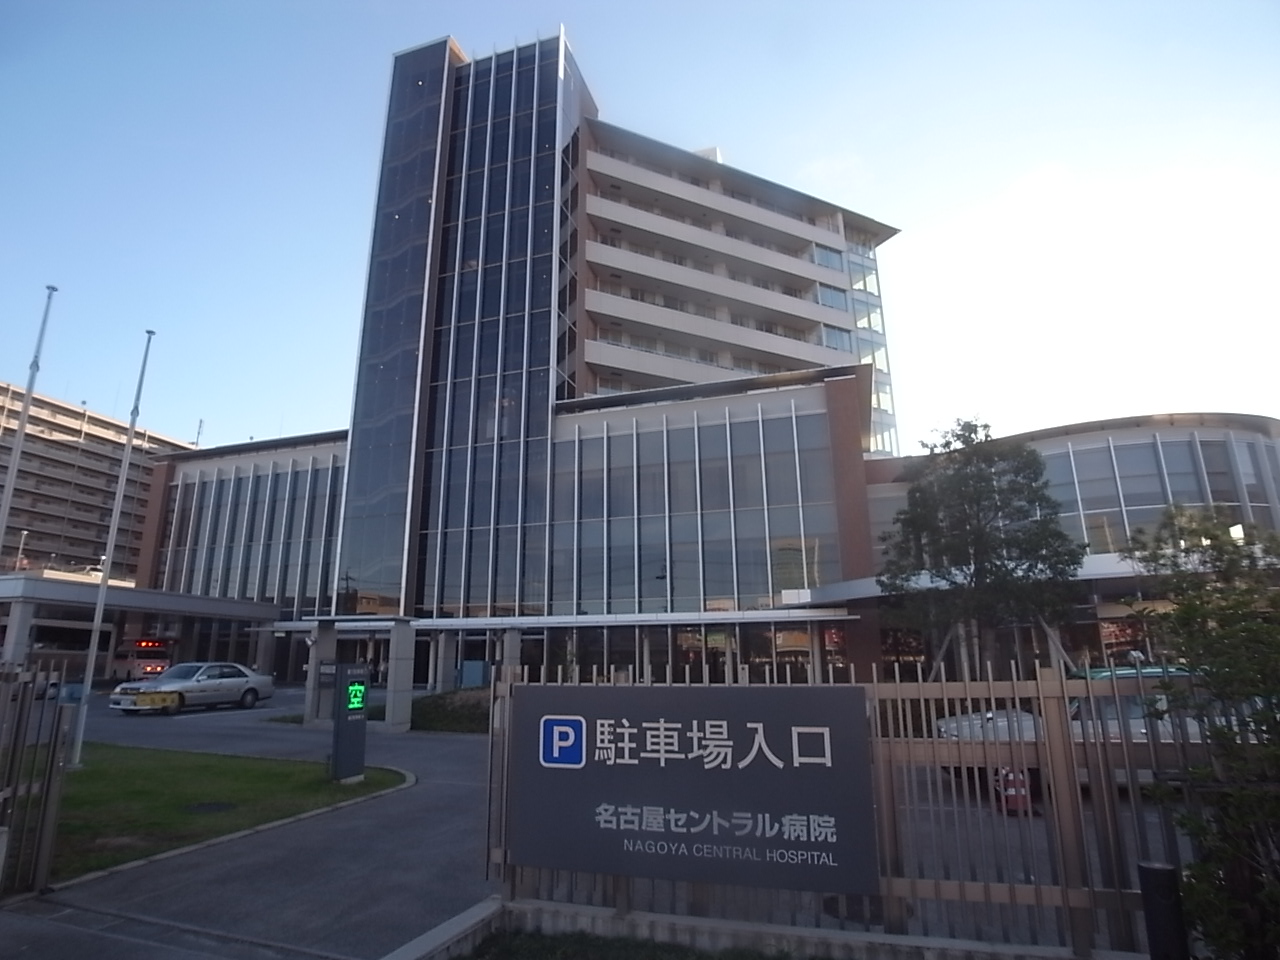 Hospital. 342m to Nagoya Central Hospital (General Hospital) (hospital)